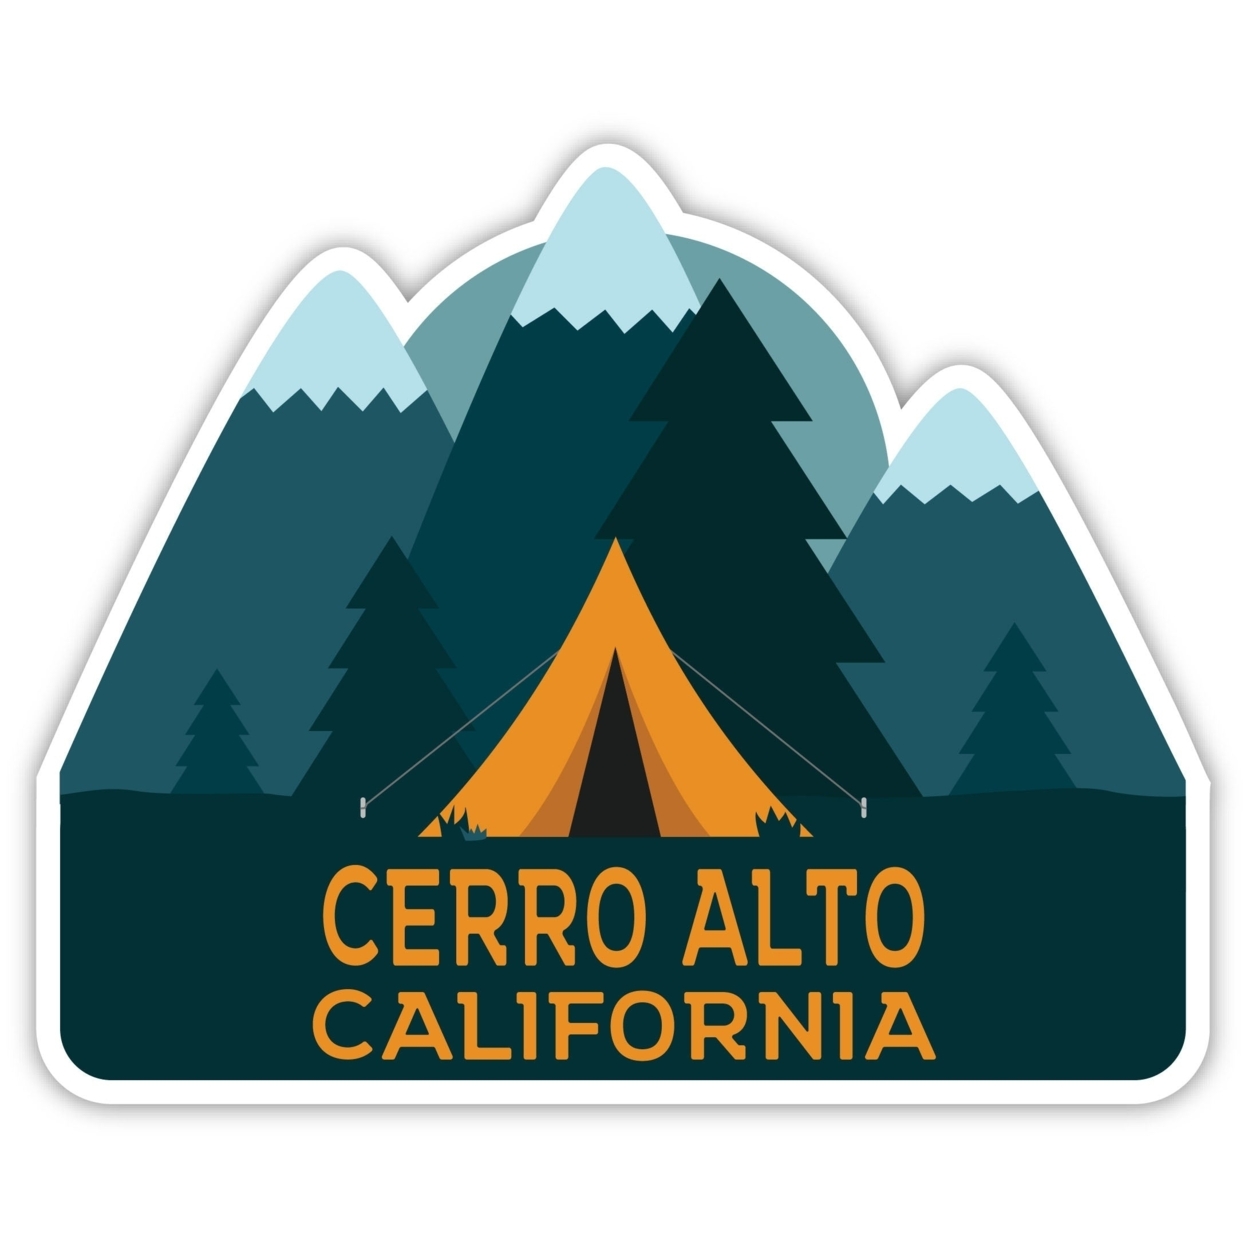 Cerro Alto California Souvenir Decorative Stickers (Choose Theme And Size) - Single Unit, 8-Inch, Tent